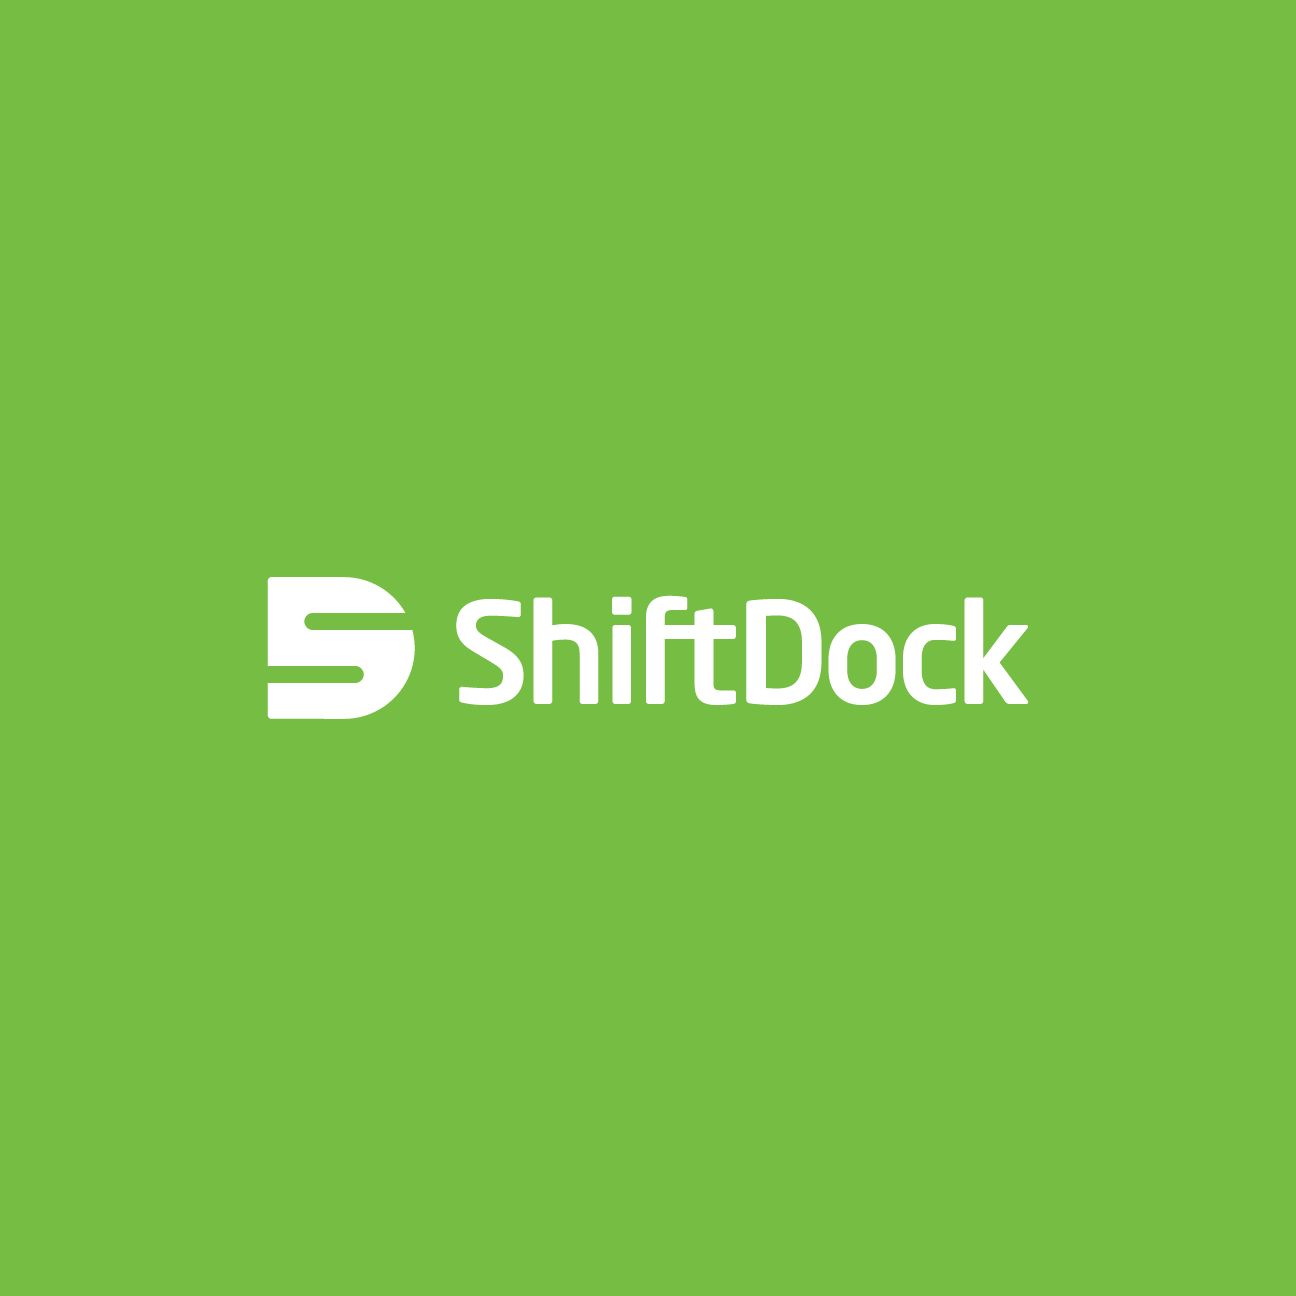 ShiftDock Logo